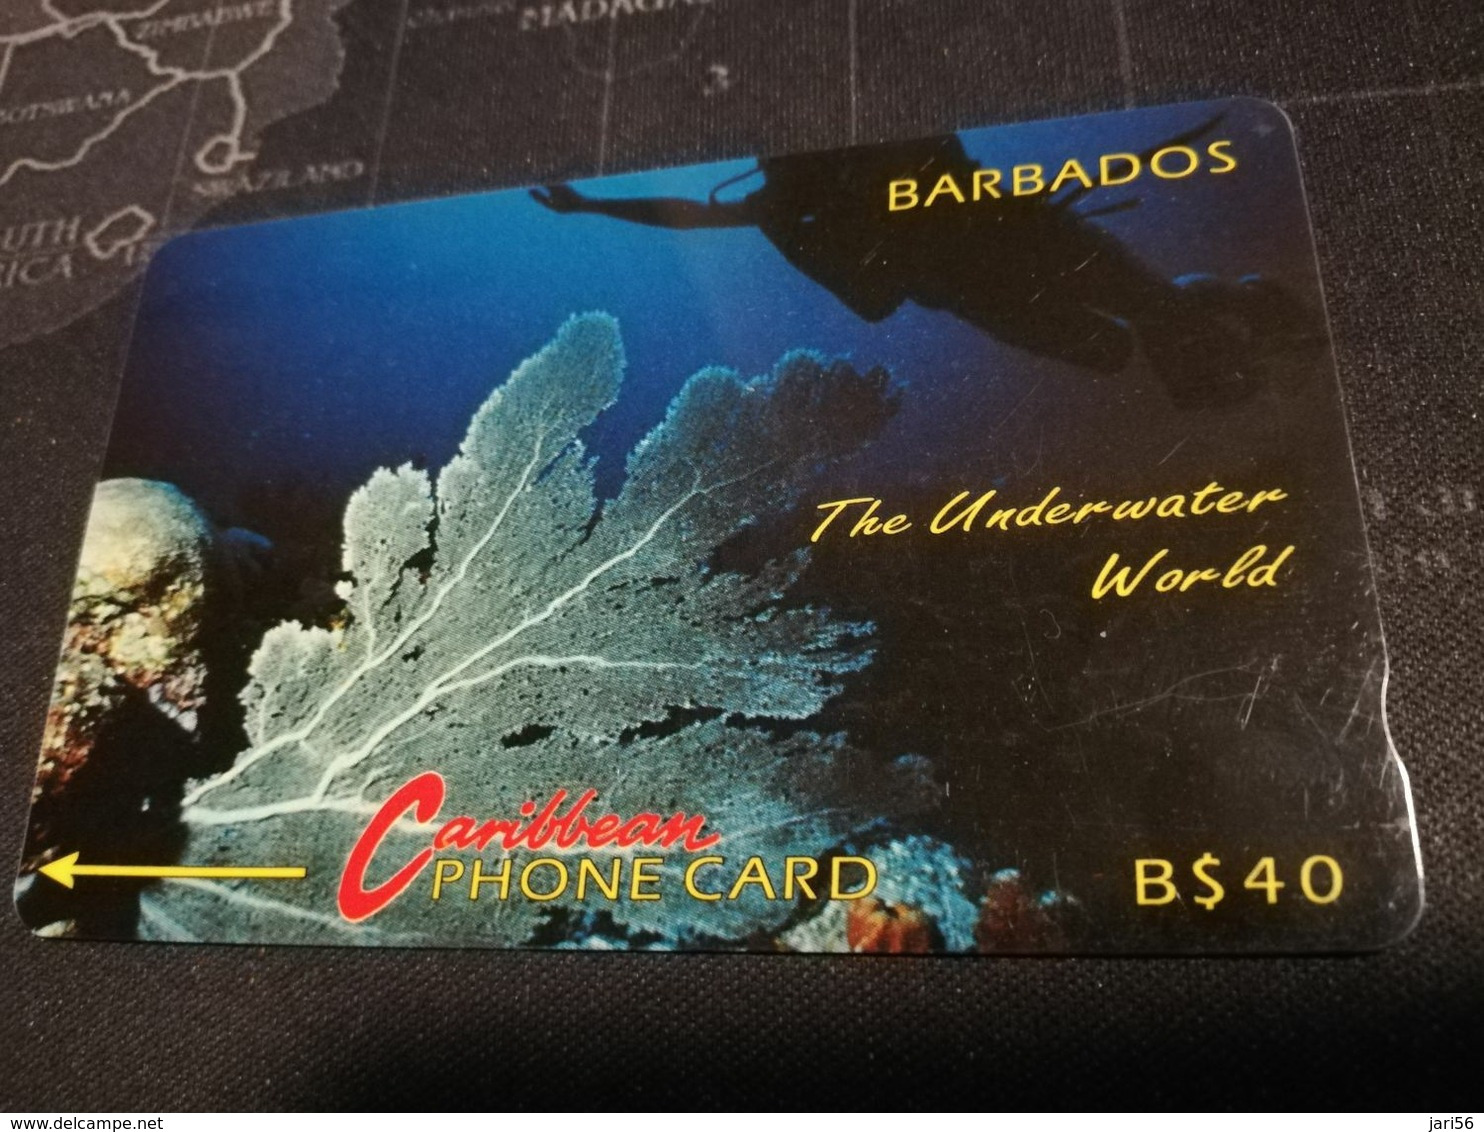 BARBADOS   $20- Gpt Magnetic     BAR-5C  5CBDC   UNDERWATER  NO LOGO    Very Fine Used  Card  ** 2865** - Barbados (Barbuda)